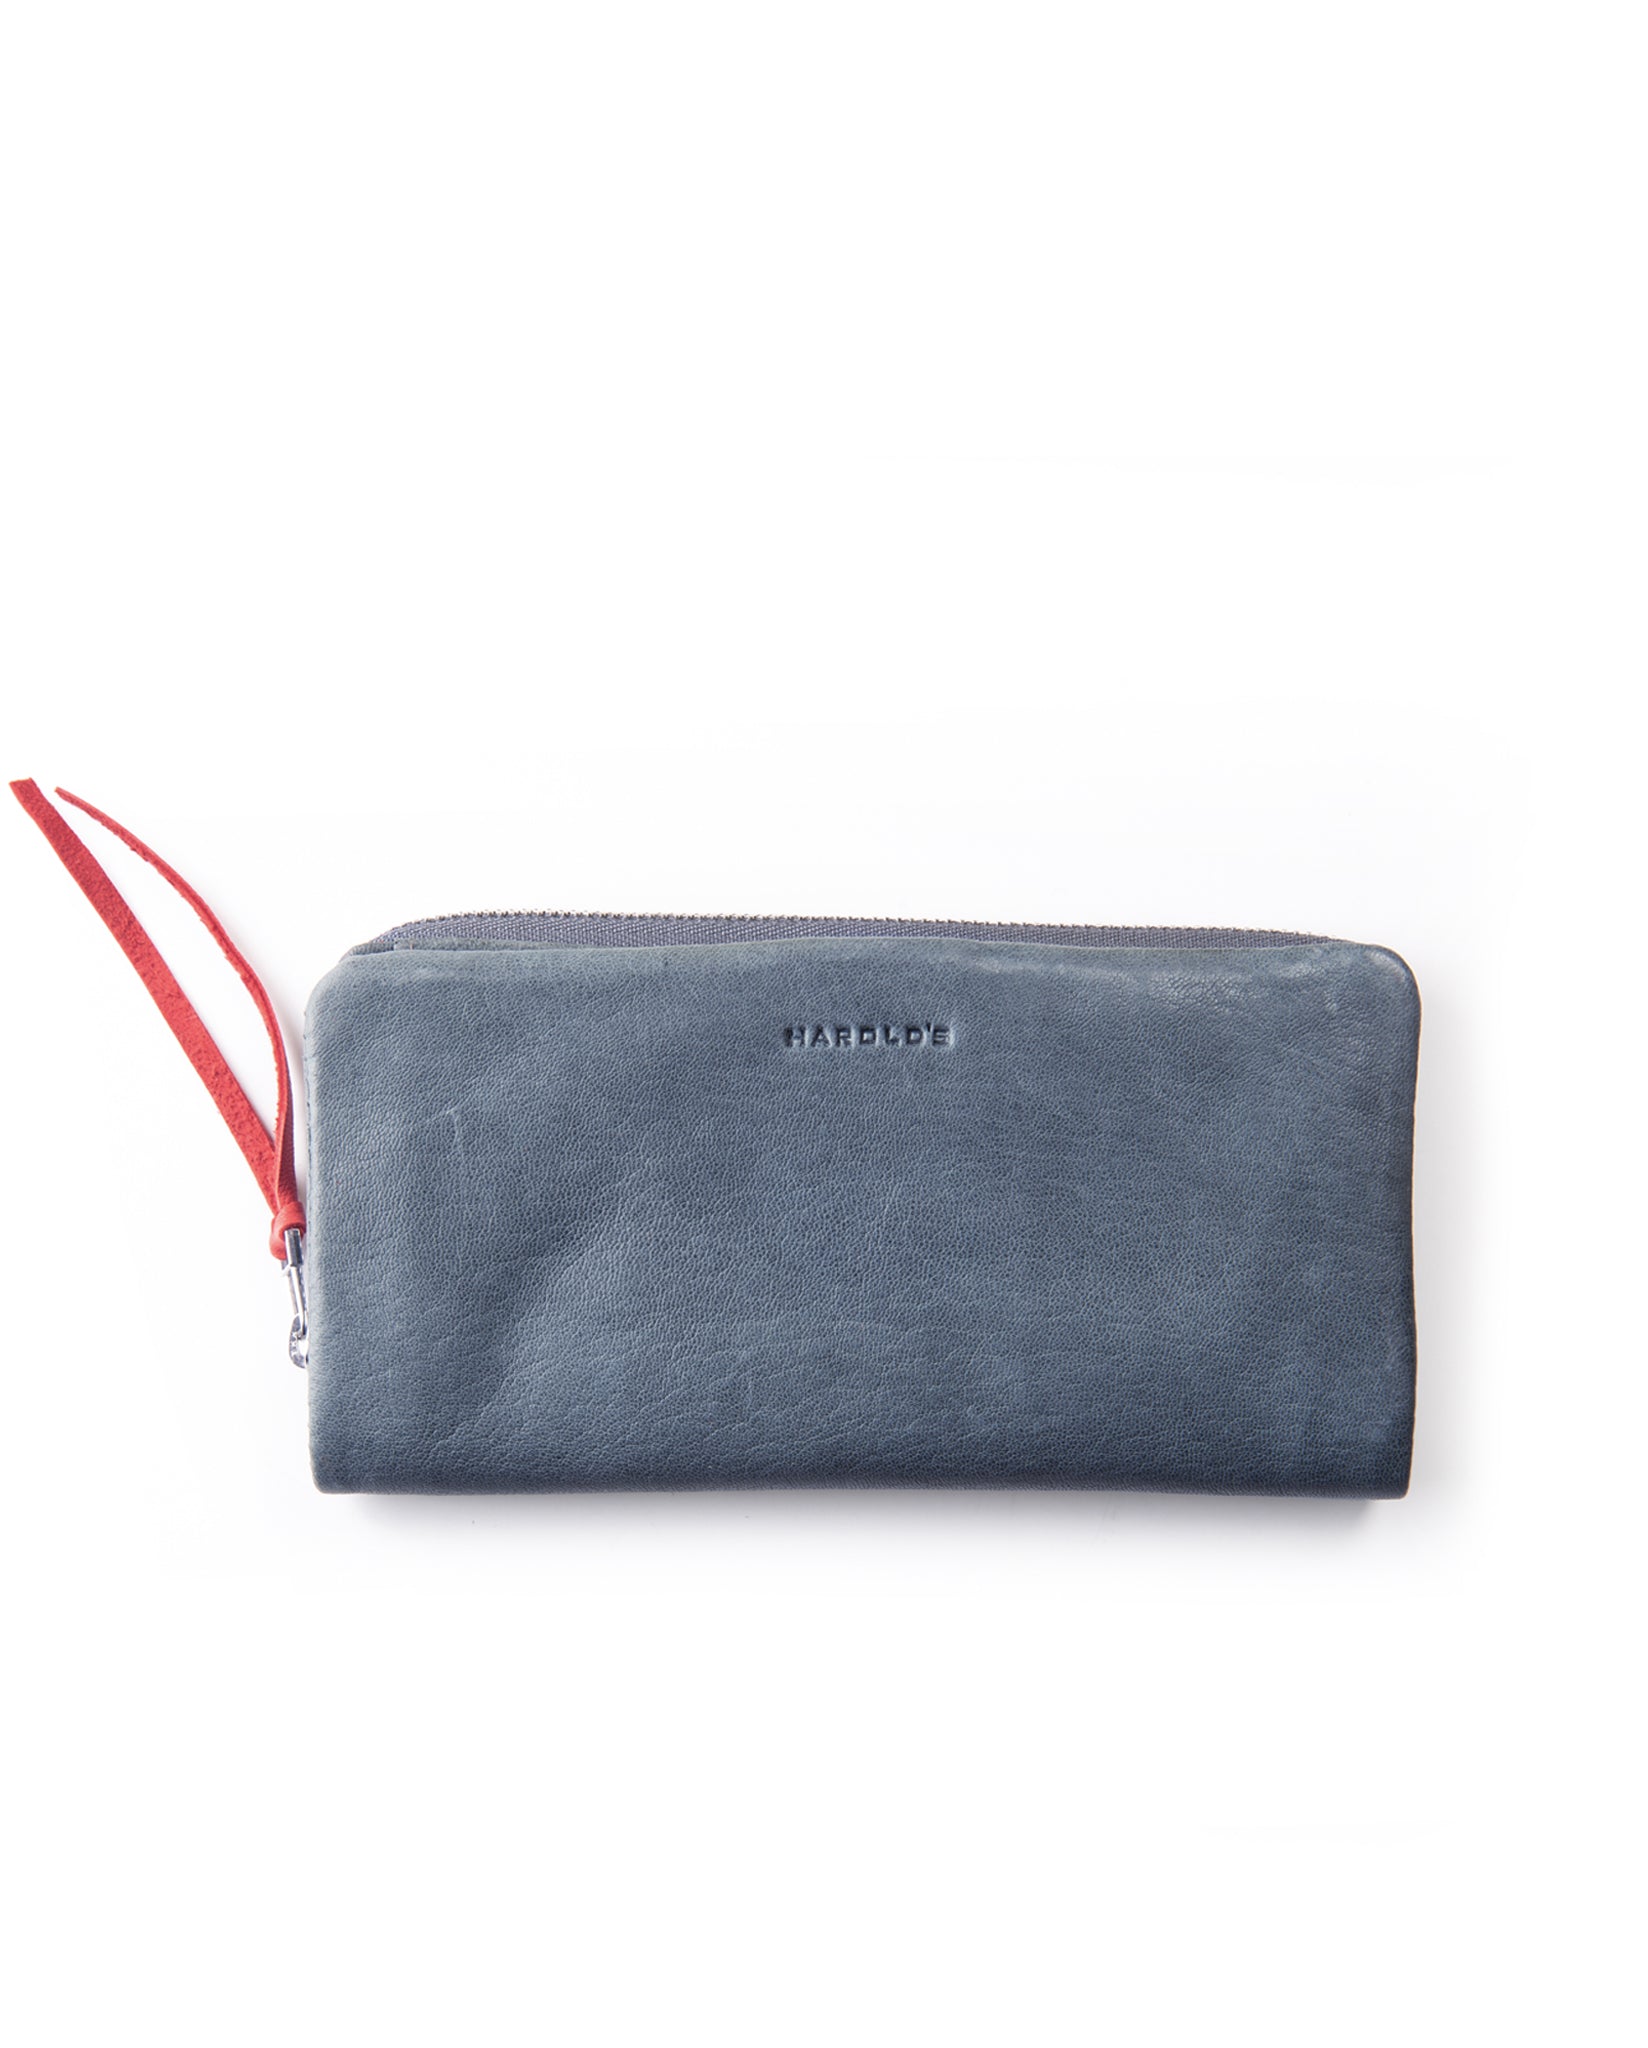 Soft wallet large